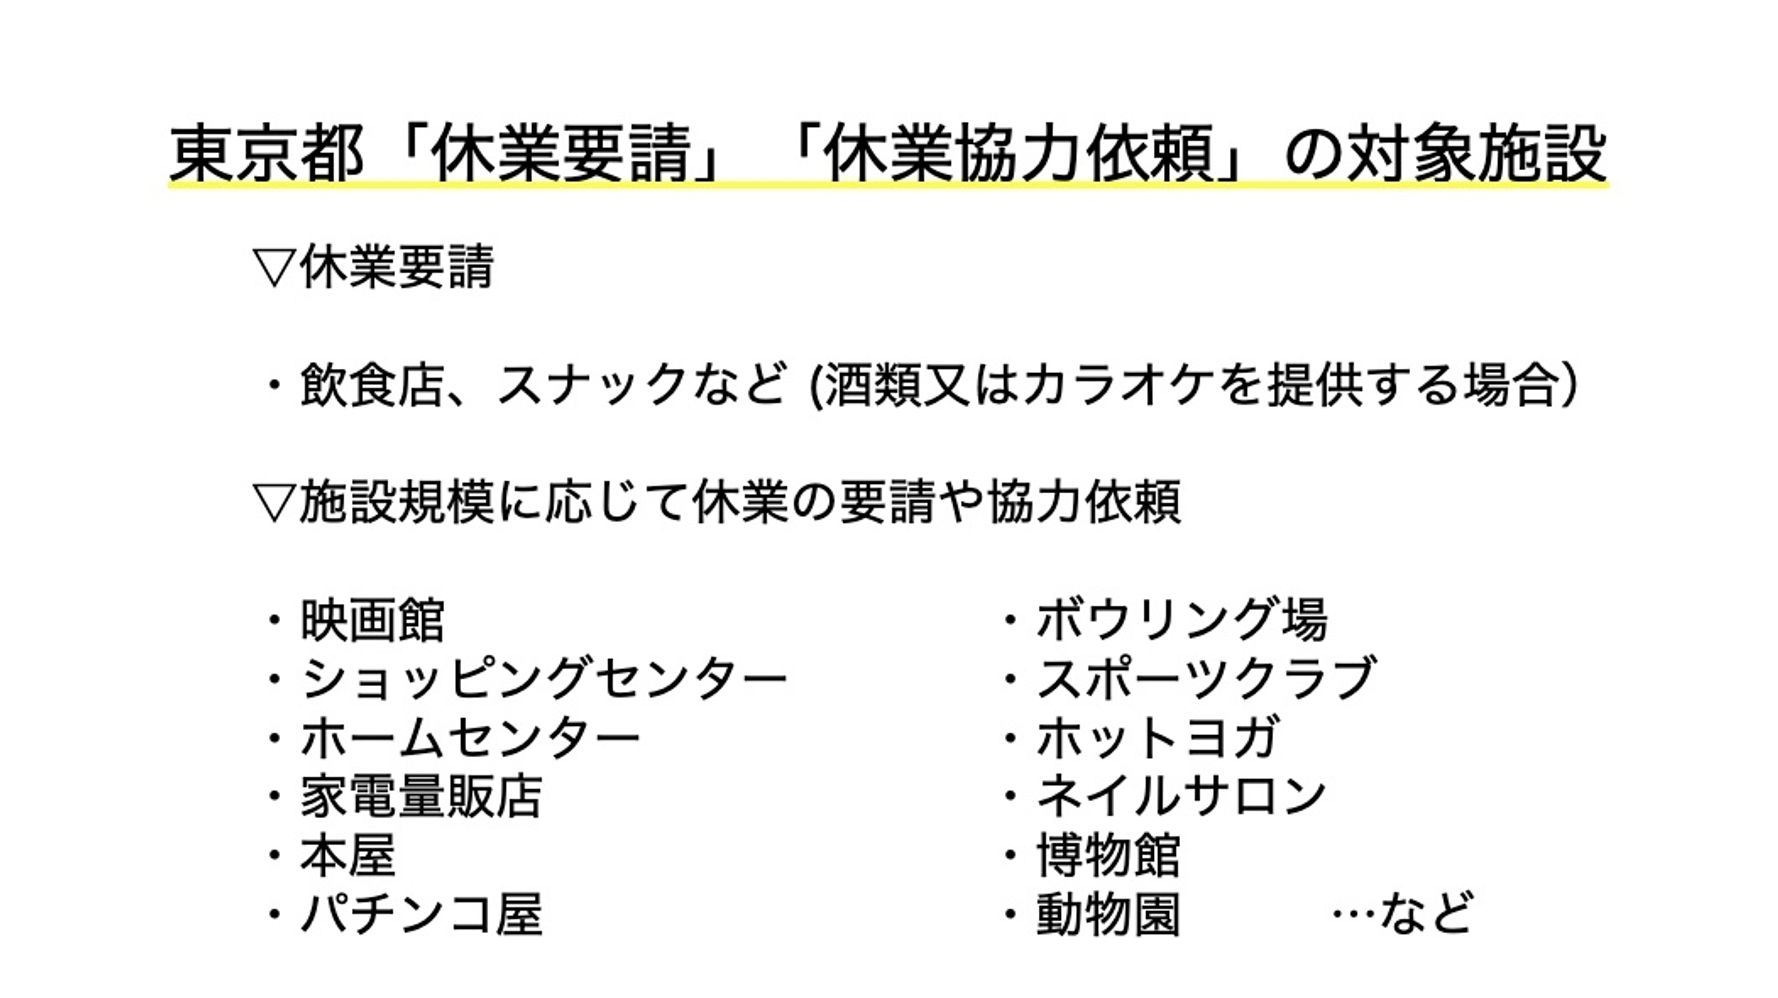 自粛 要請 都 業種 東京 レンタルスタジオも業種により、とうとう東京都の営業自粛要請に含まれるようです。2021/5/11